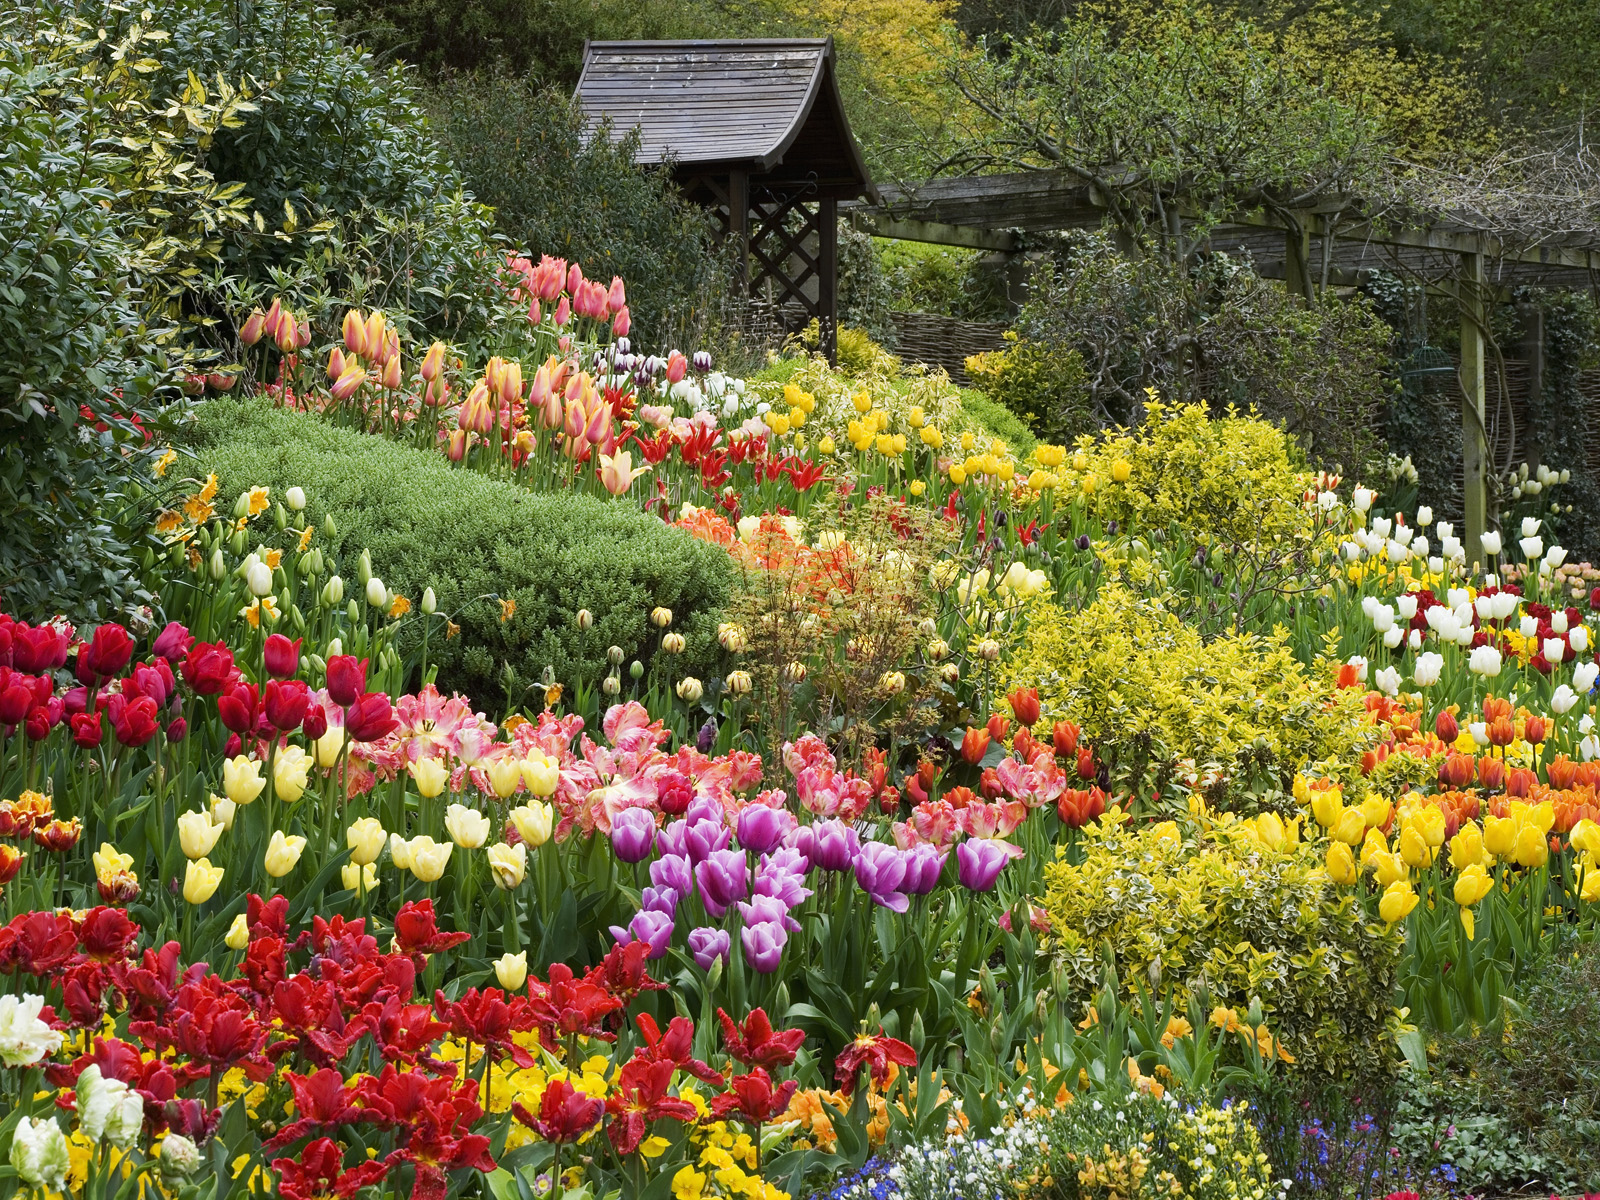 Top ảnh vườn hoa đẹp: Bạn đang tìm kiếm những bức ảnh đẹp nhất của các vườn hoa? Hãy xem Top ảnh vườn hoa đẹp và tận hưởng vẻ đẹp kỳ diệu của các loài hoa.